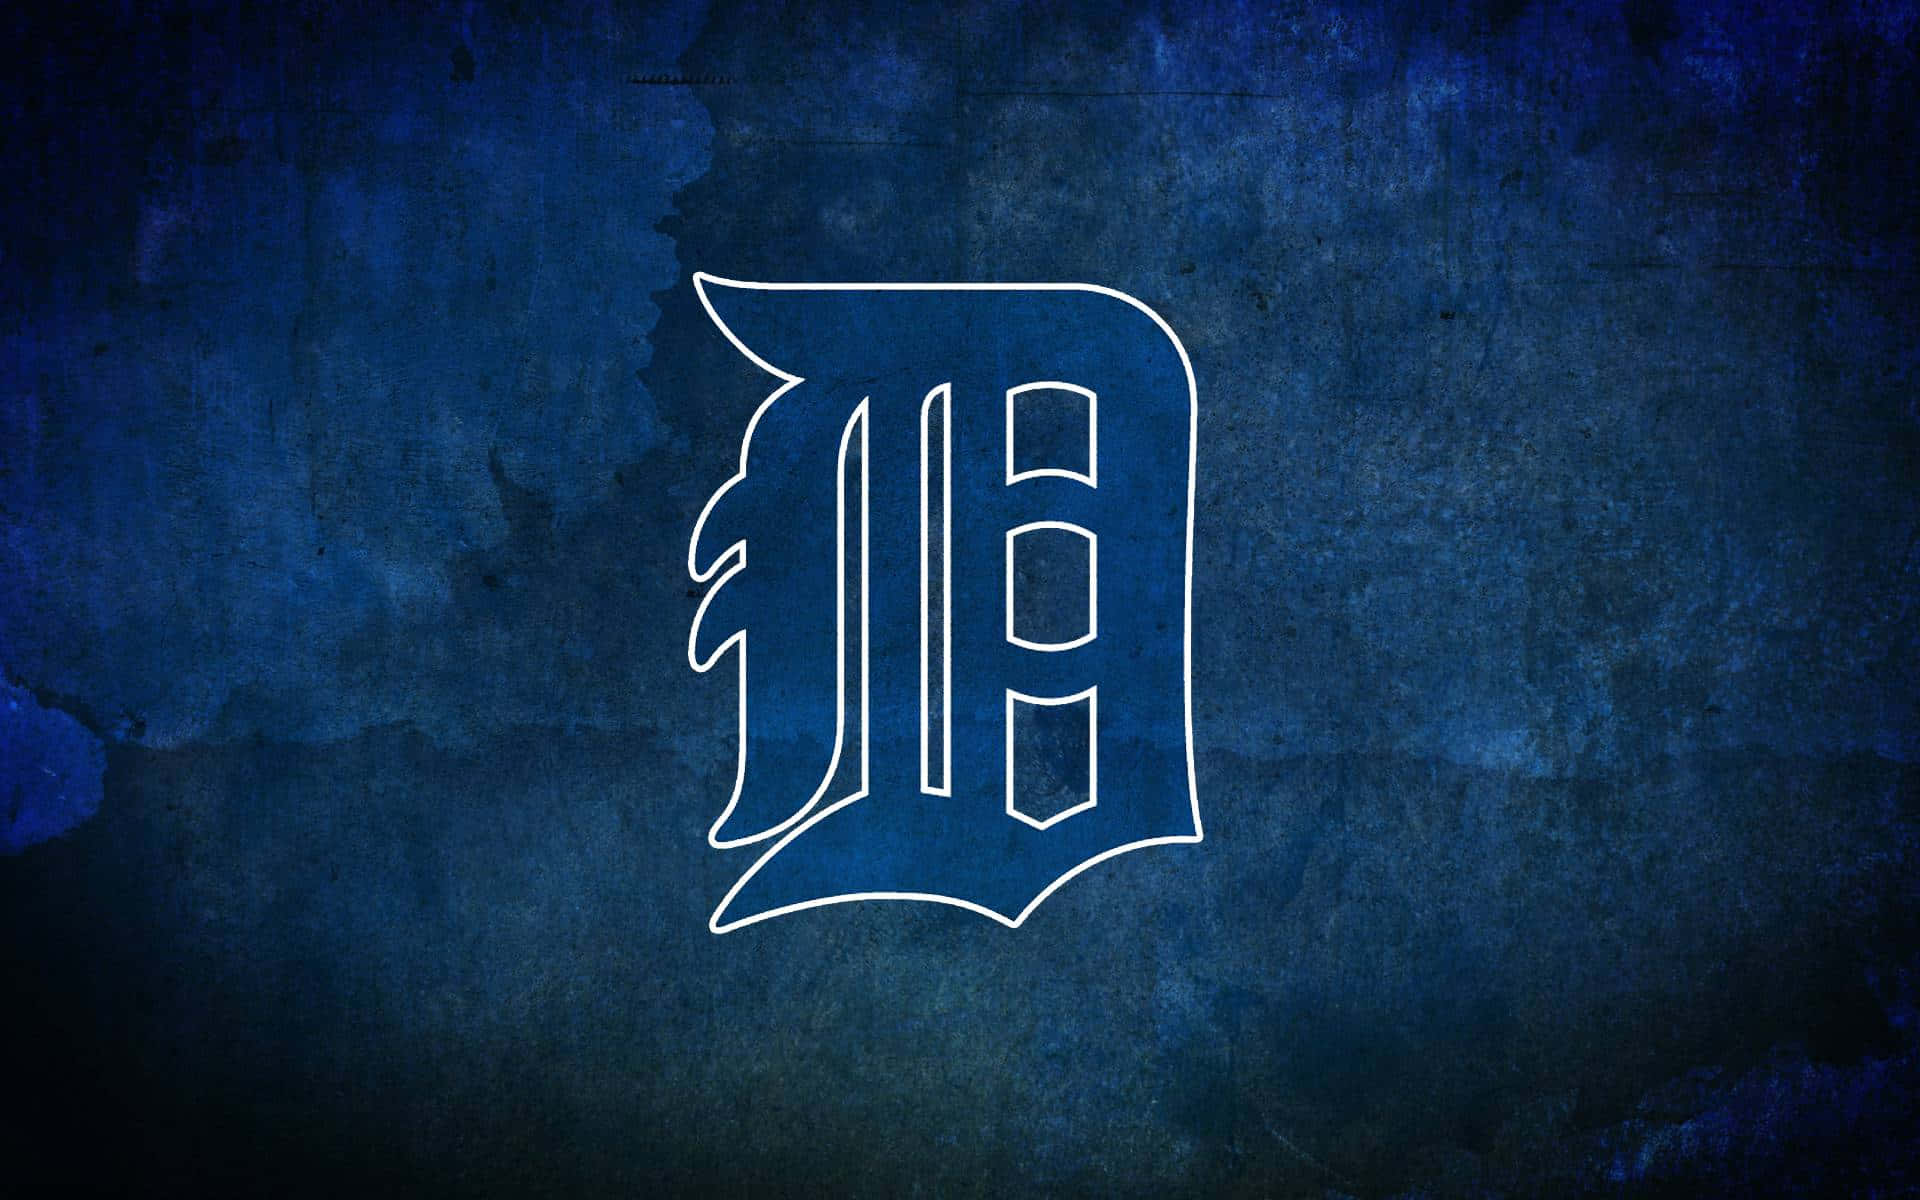 Logoufficiale Dei Detroit Tigers Sfondo